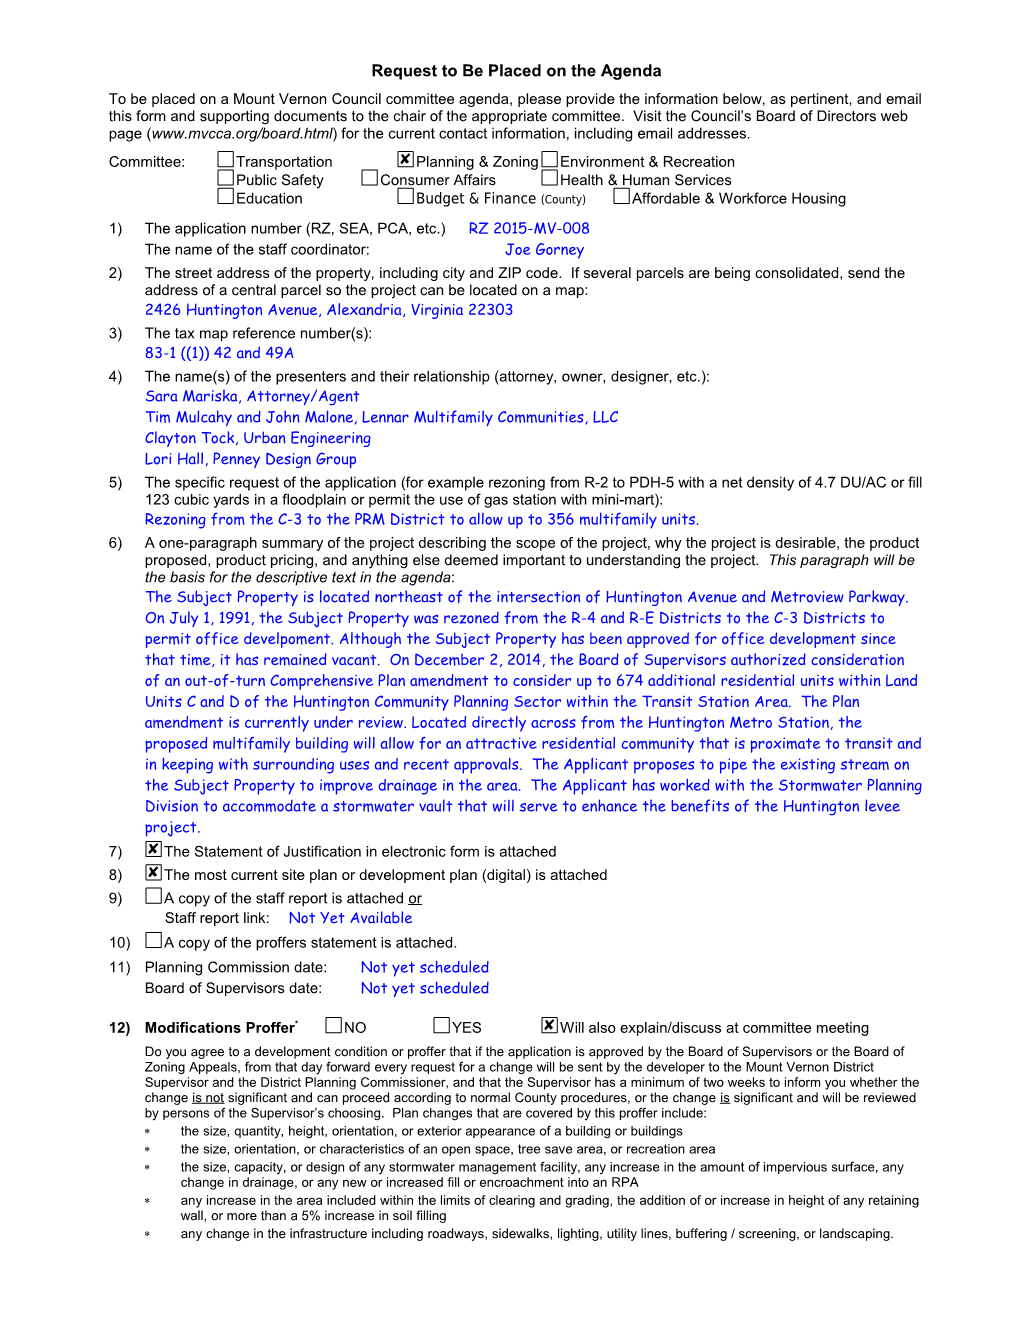 MVCCA Agenda Request 05.13.16 (A0709085)